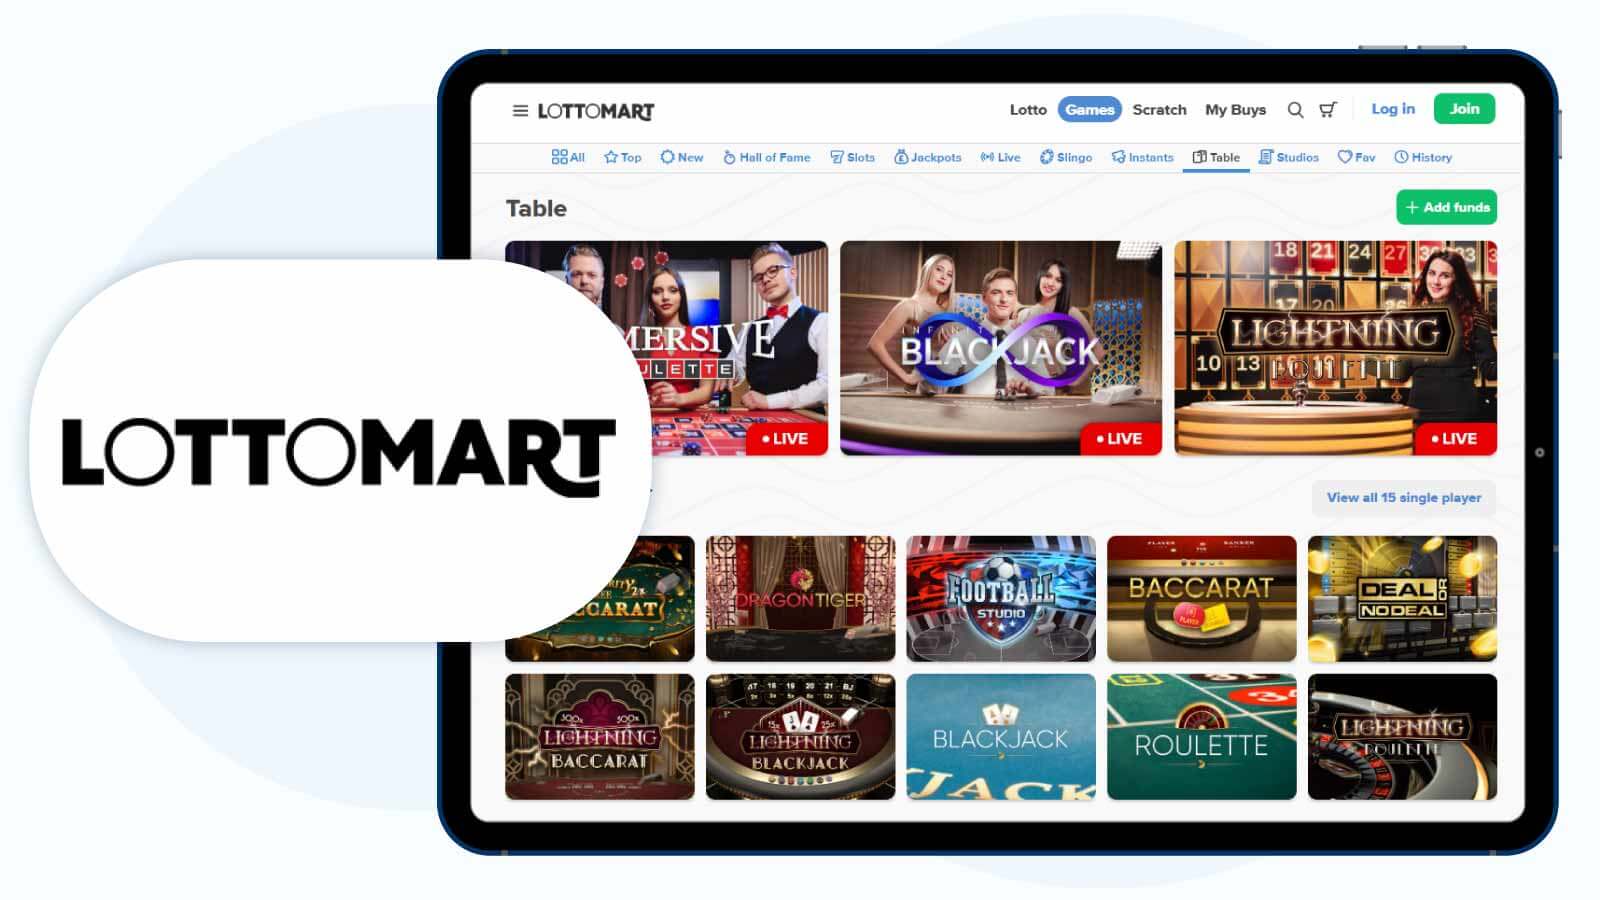 Lottomart Casino – Best £10 Deposit Bonus for Table Games